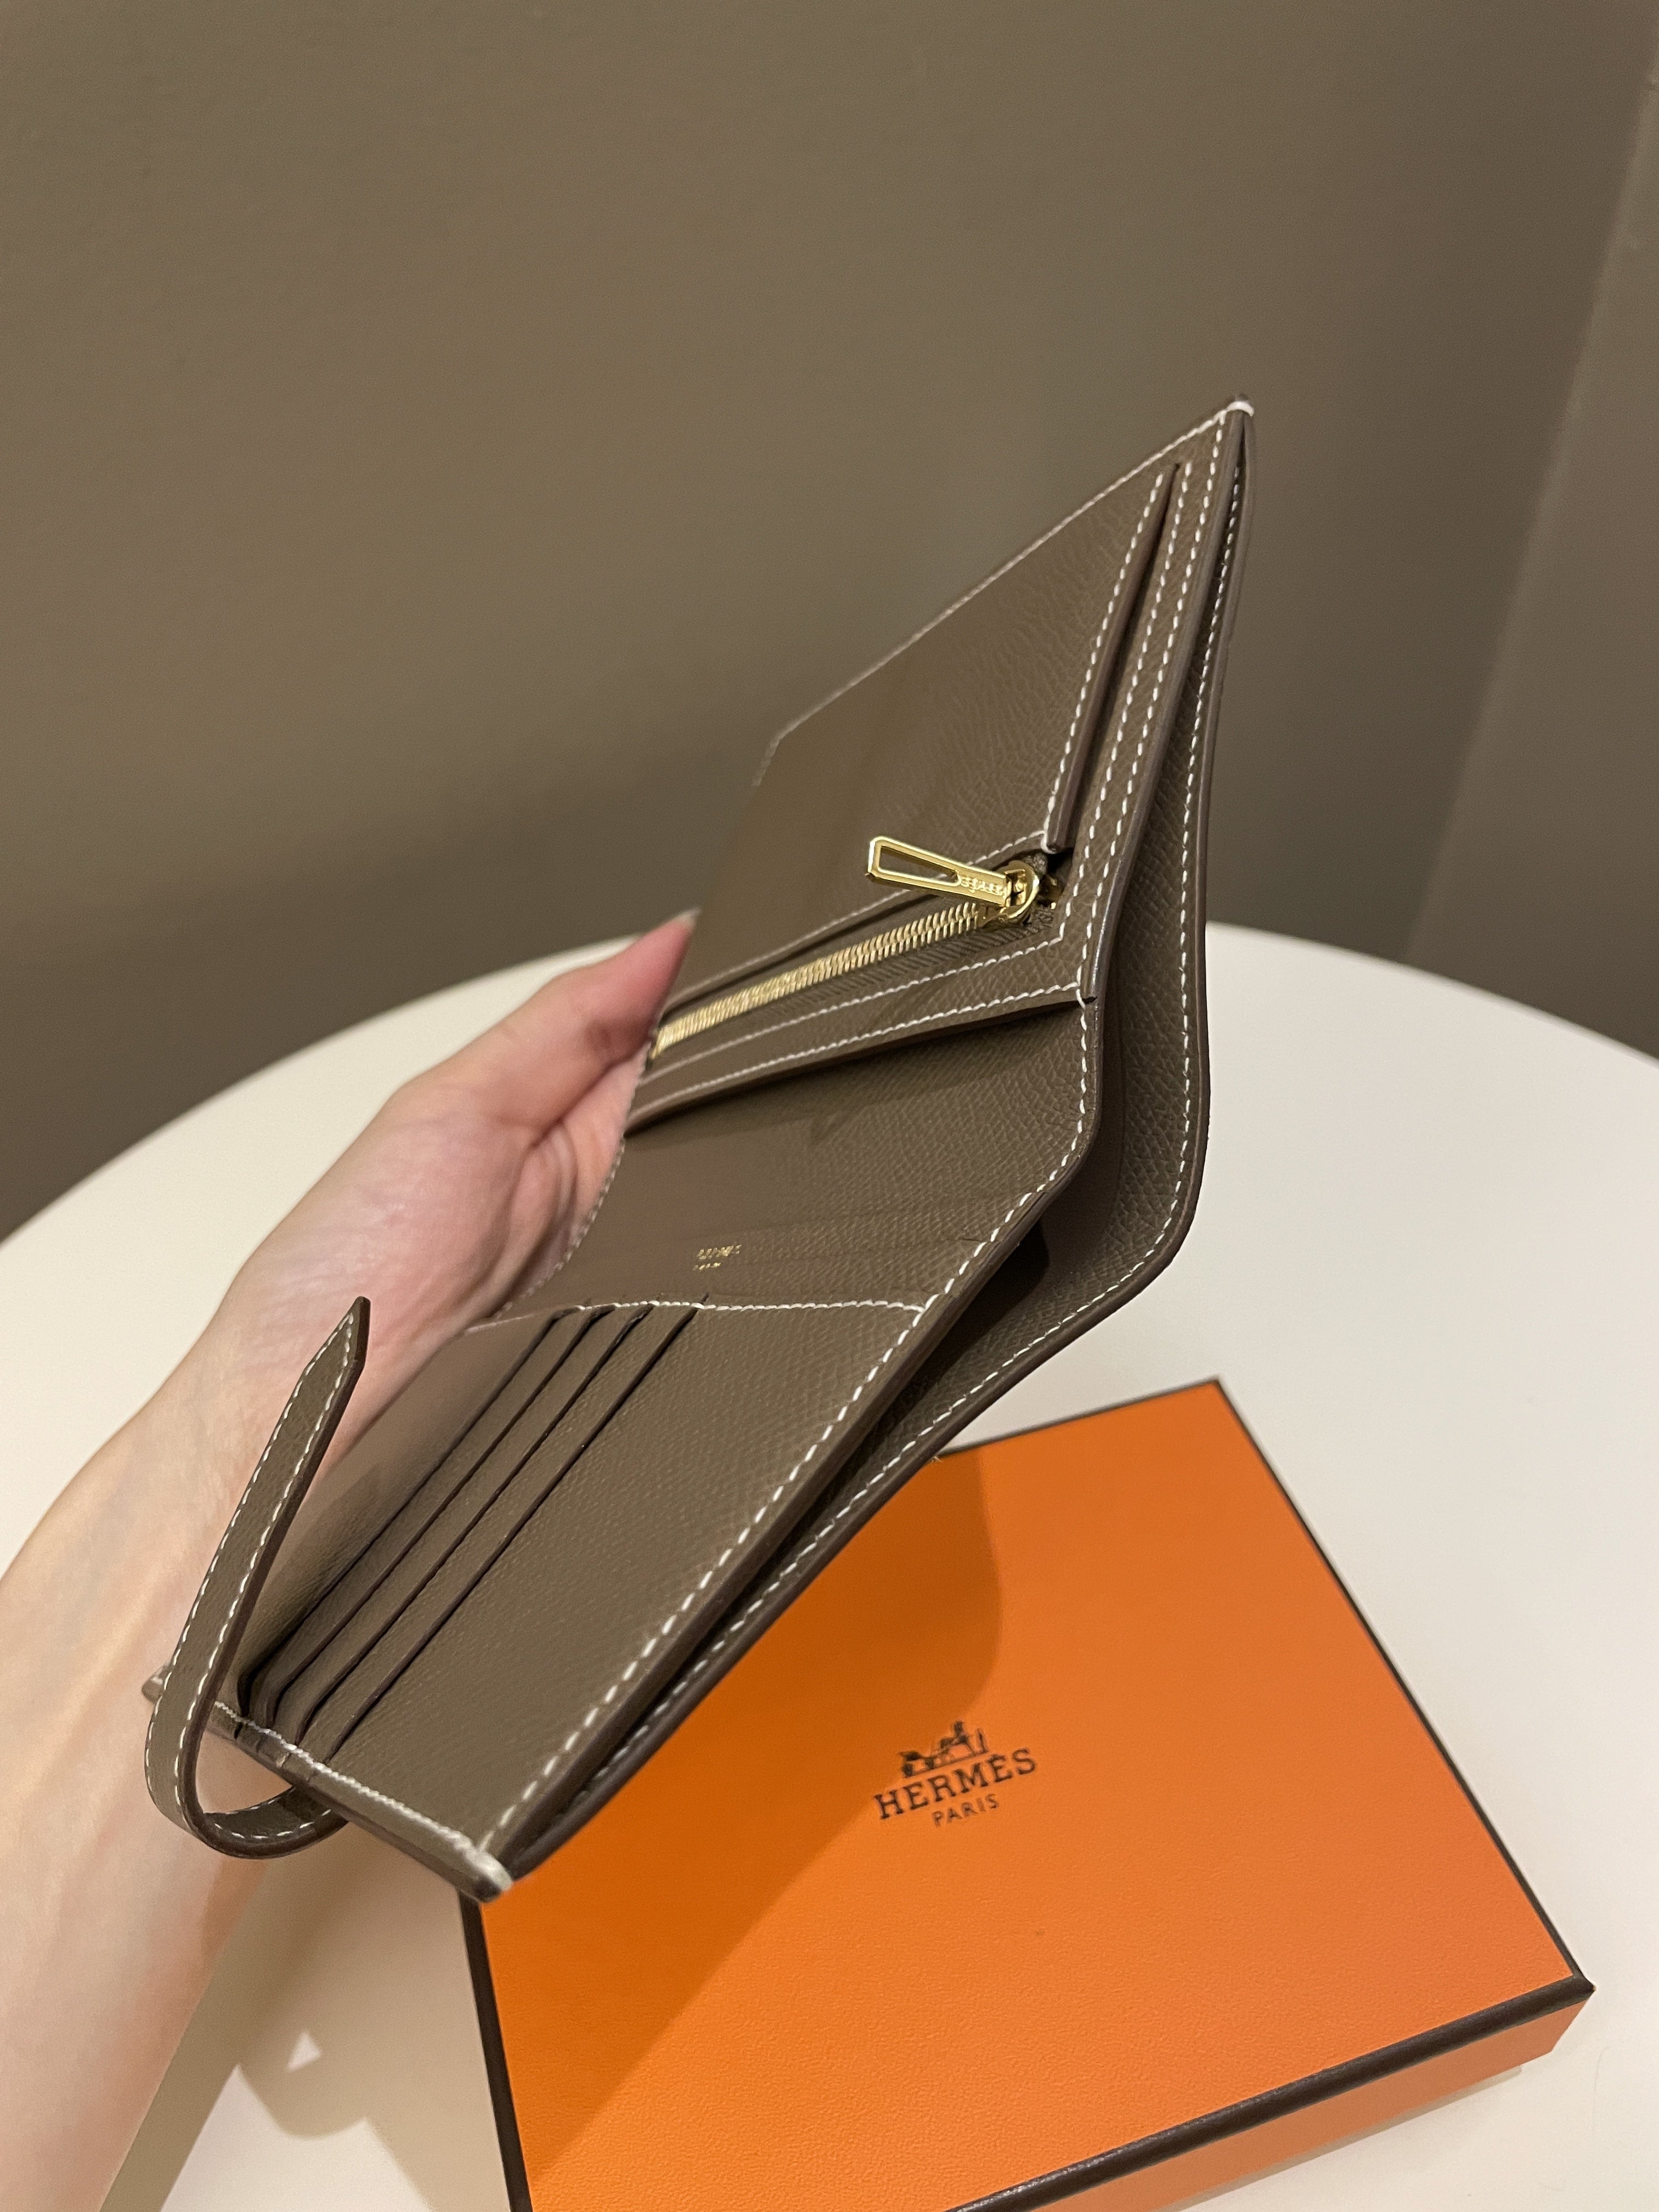 Hermes Bearn Compact Wallet
Etoupe Epsom